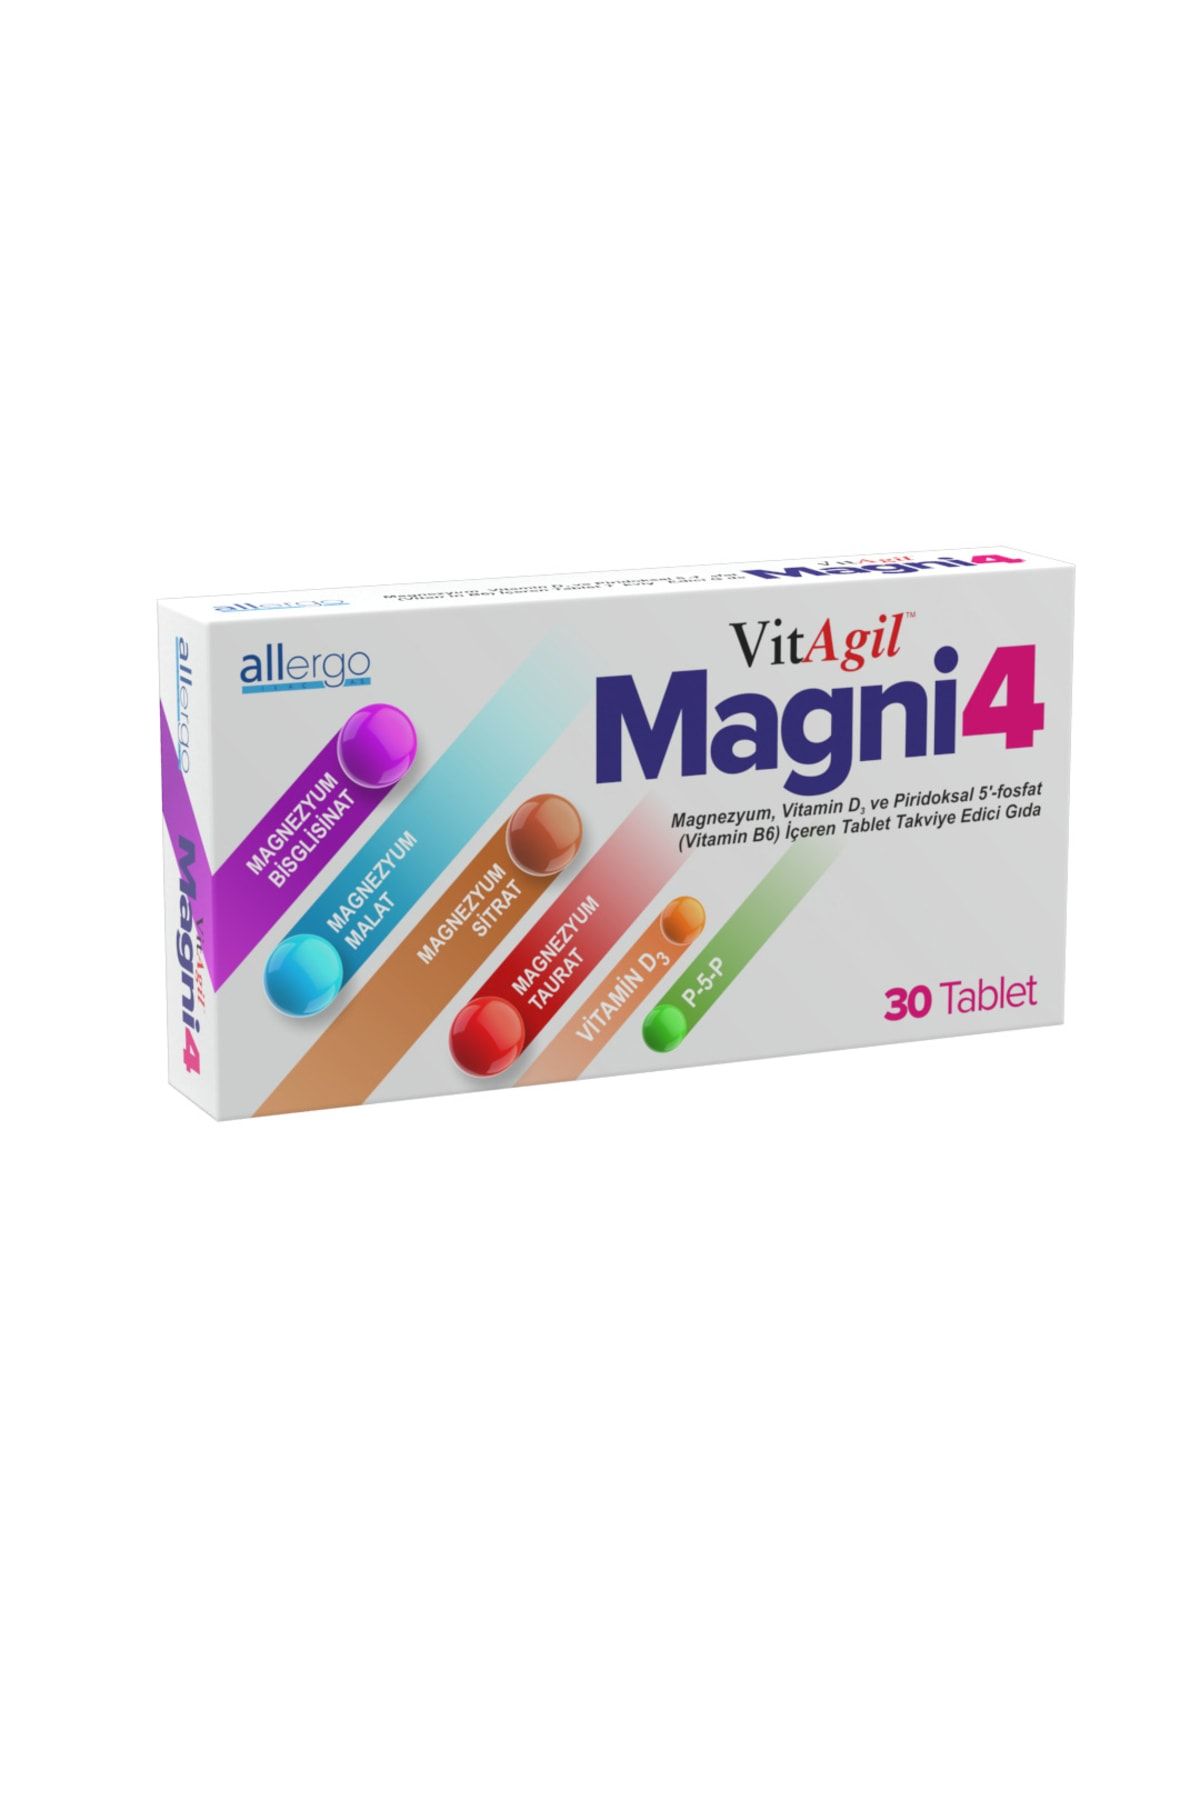 Allergo Vitagil Magni4 Magnezyum Vitamin D3 P5p 30 Tablet